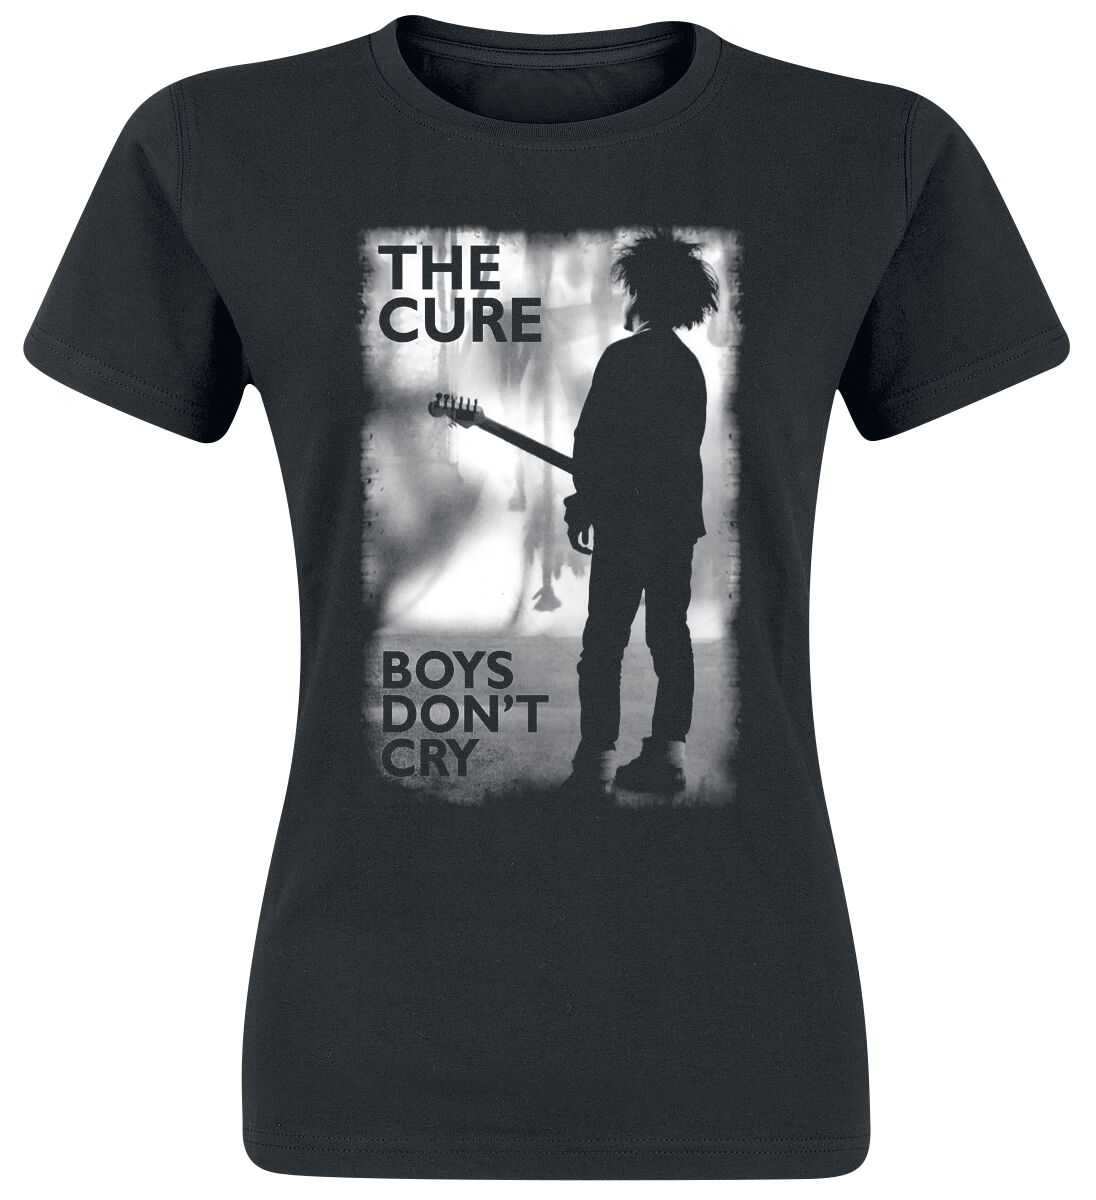 T-Shirt Manches courtes de The Cure - Boys Don't Cry - S à XXL - pour Femme - noir